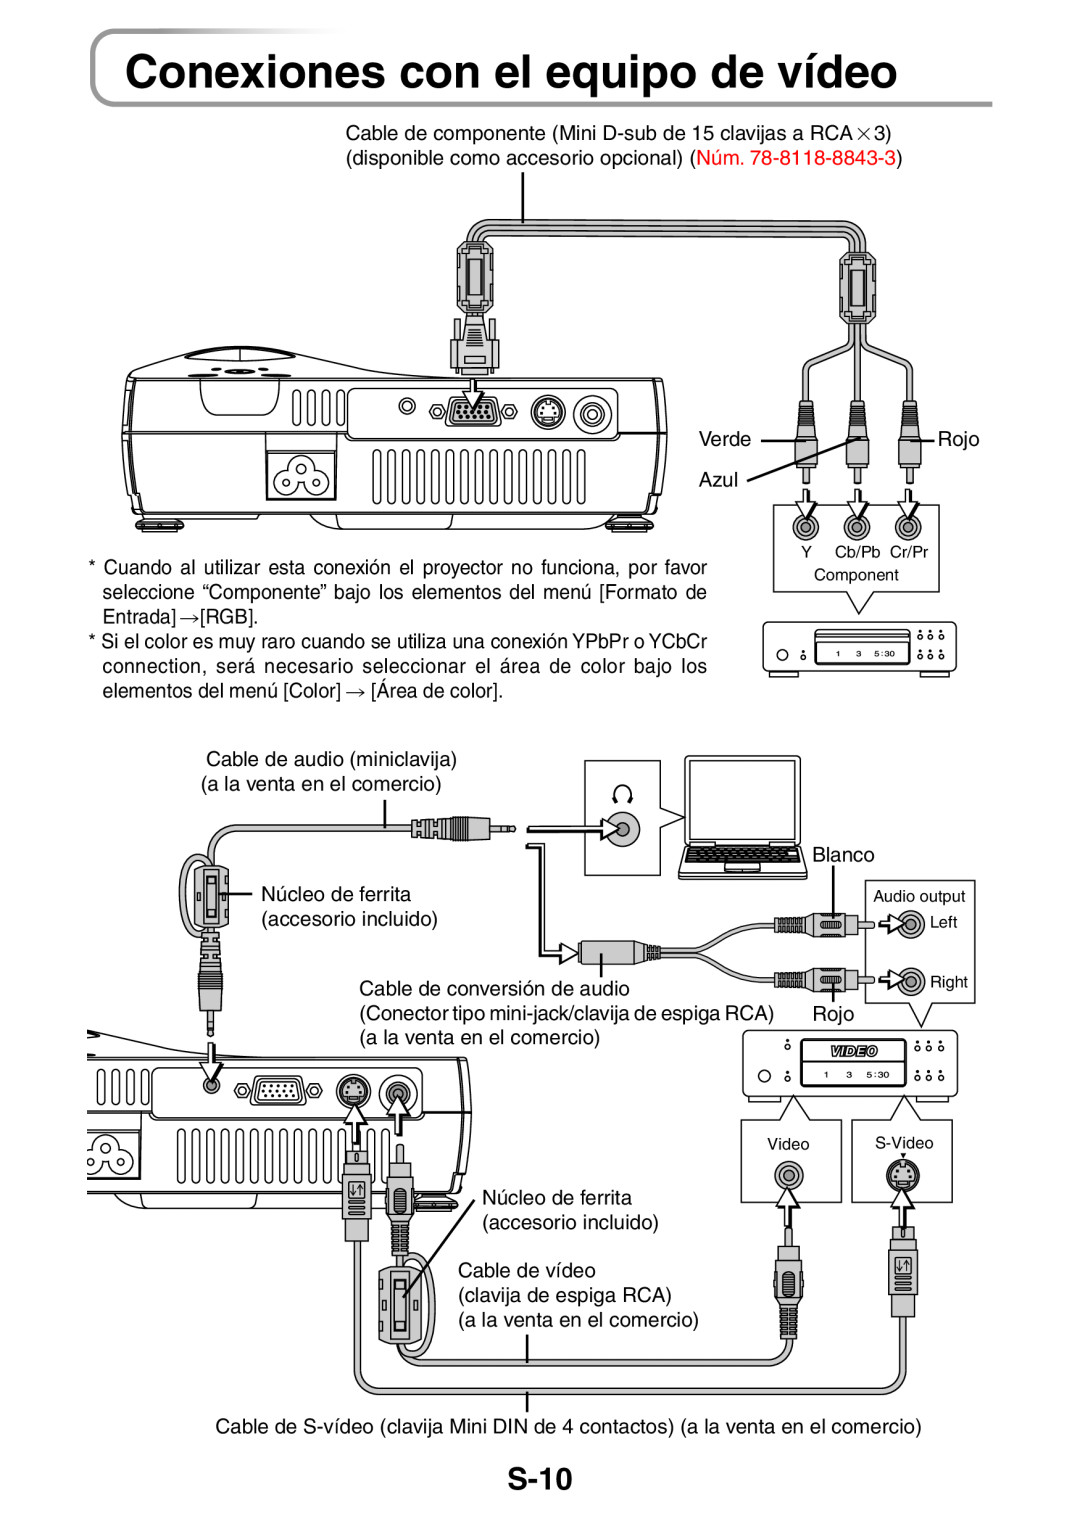 3M PX5 user manual Conexiones con el equipo de vídeo, S-10 